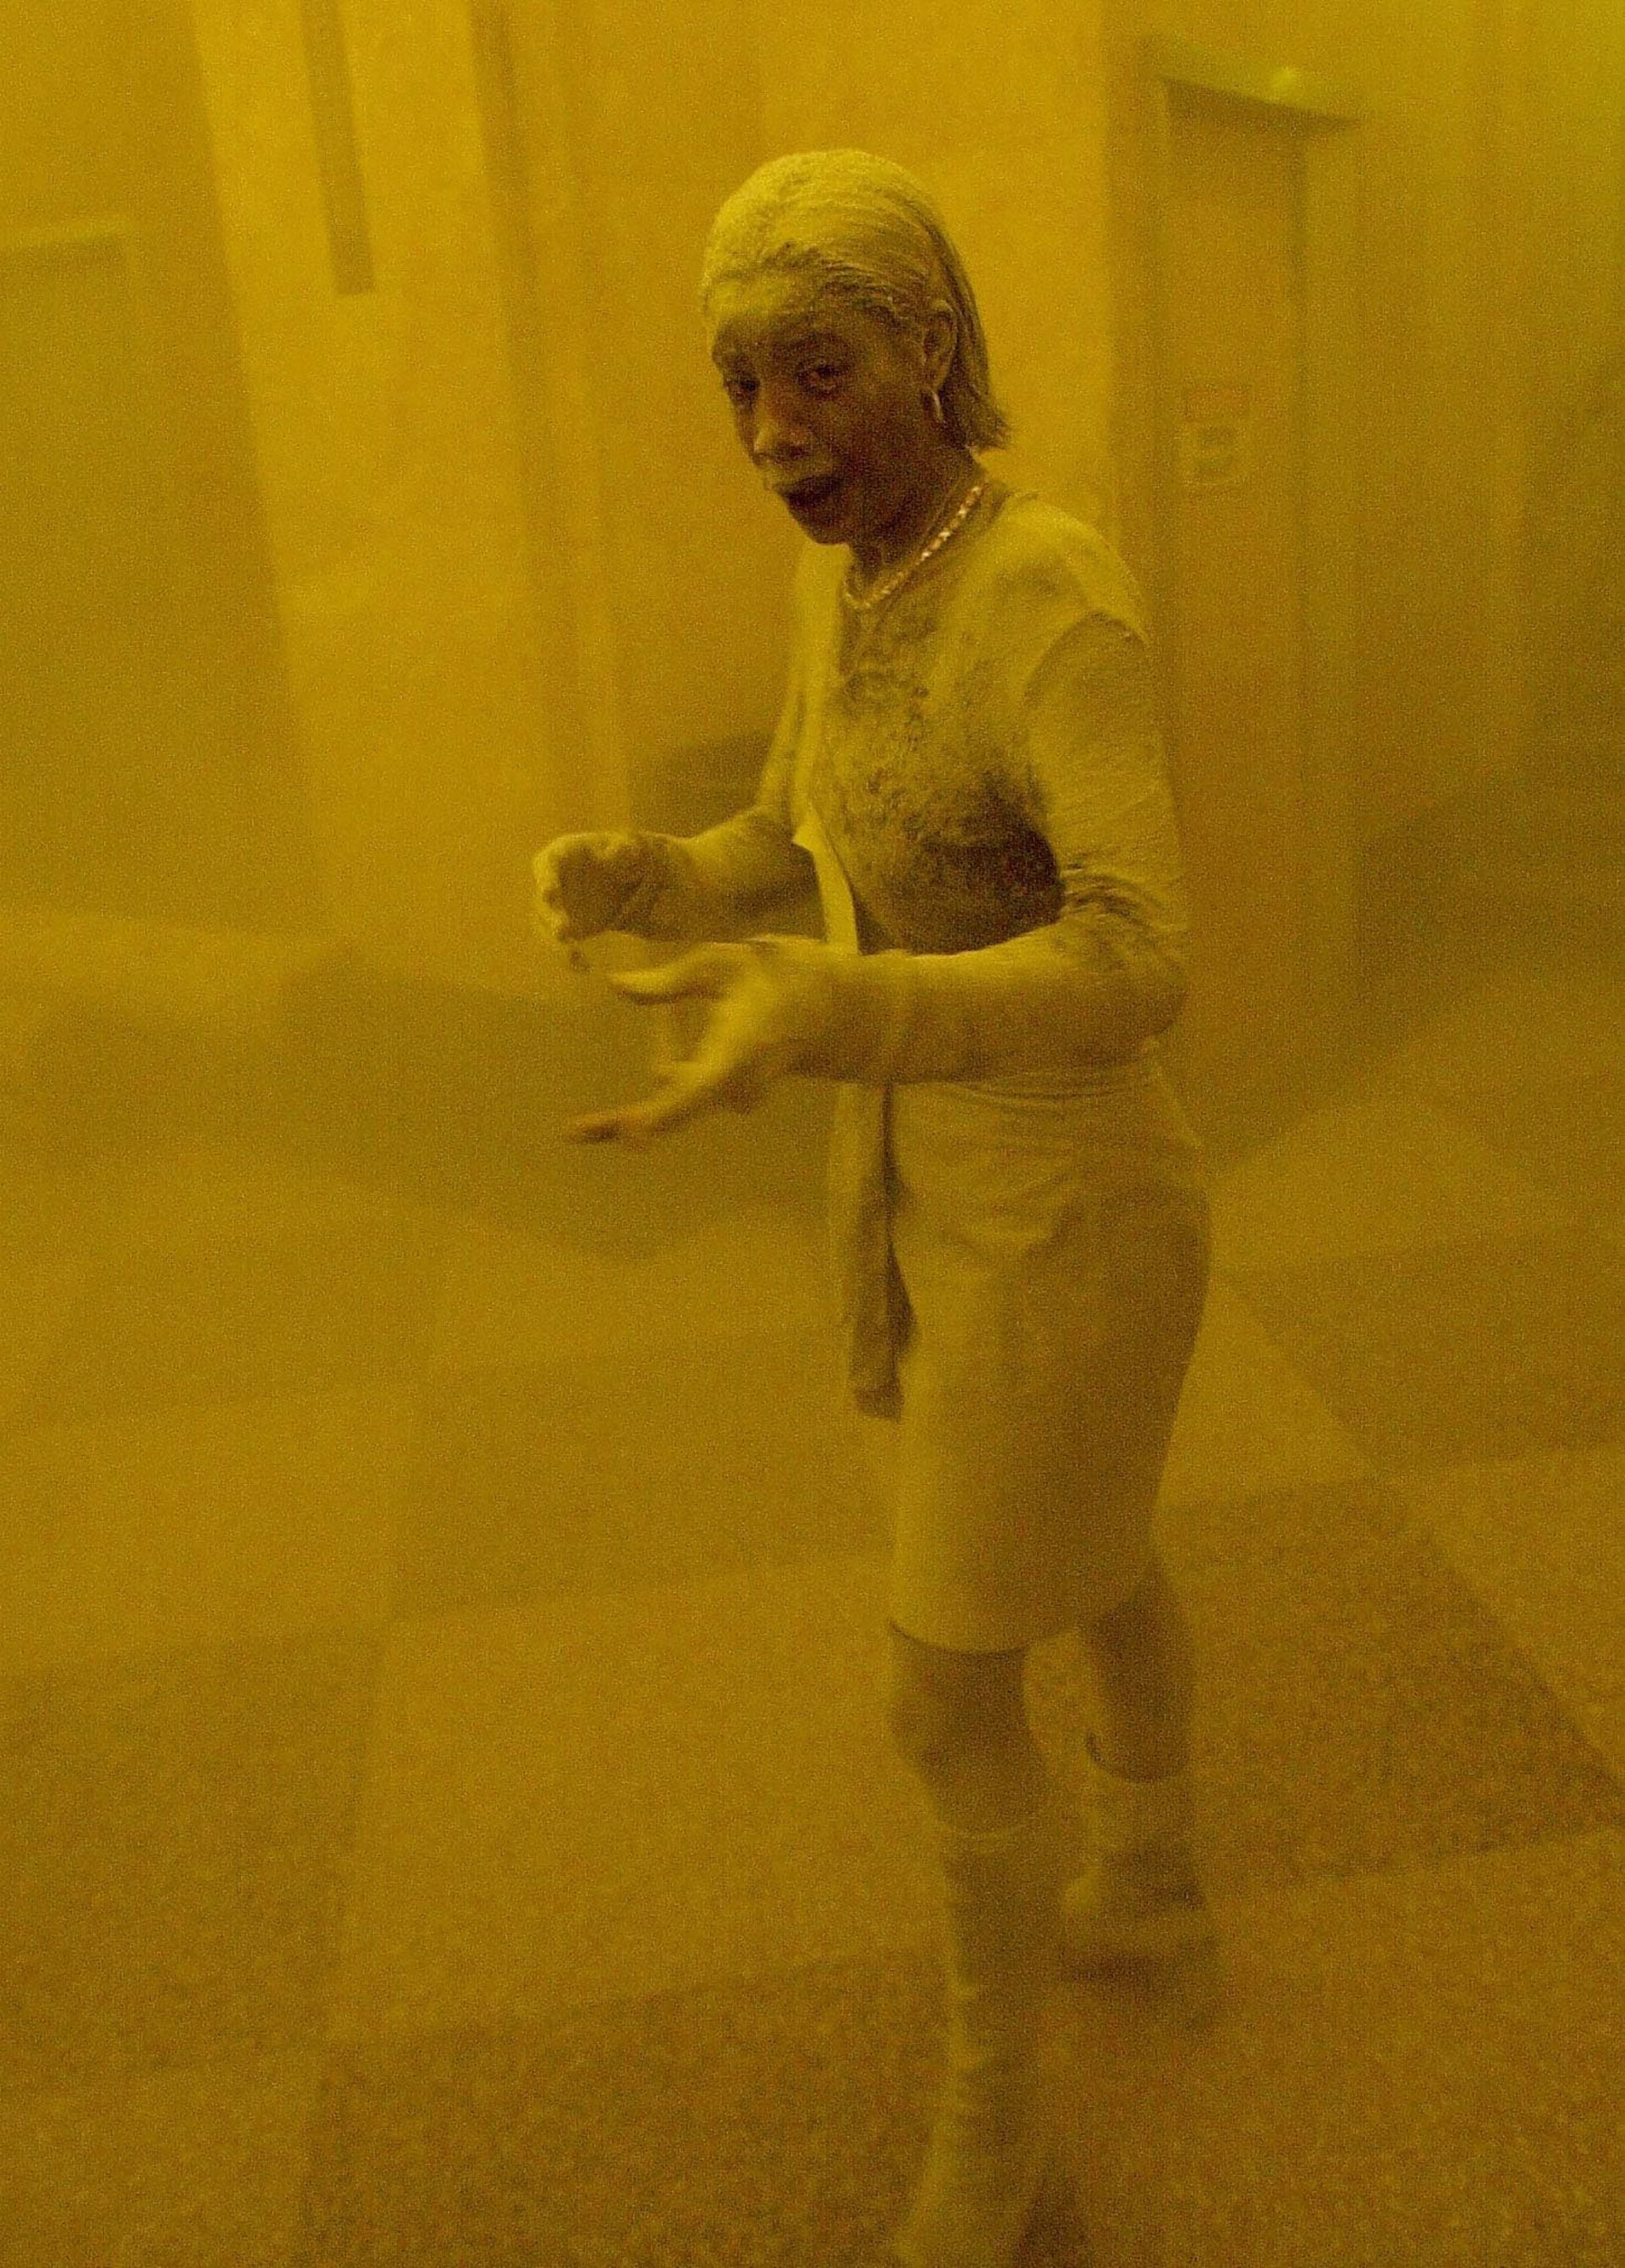 Marcy Borders, la "dust lady". Su imagen fue una de las más icónicas del atentado a las Torres Gemelas. Falleció en 2015 víctima de un cáncer. (AFP)